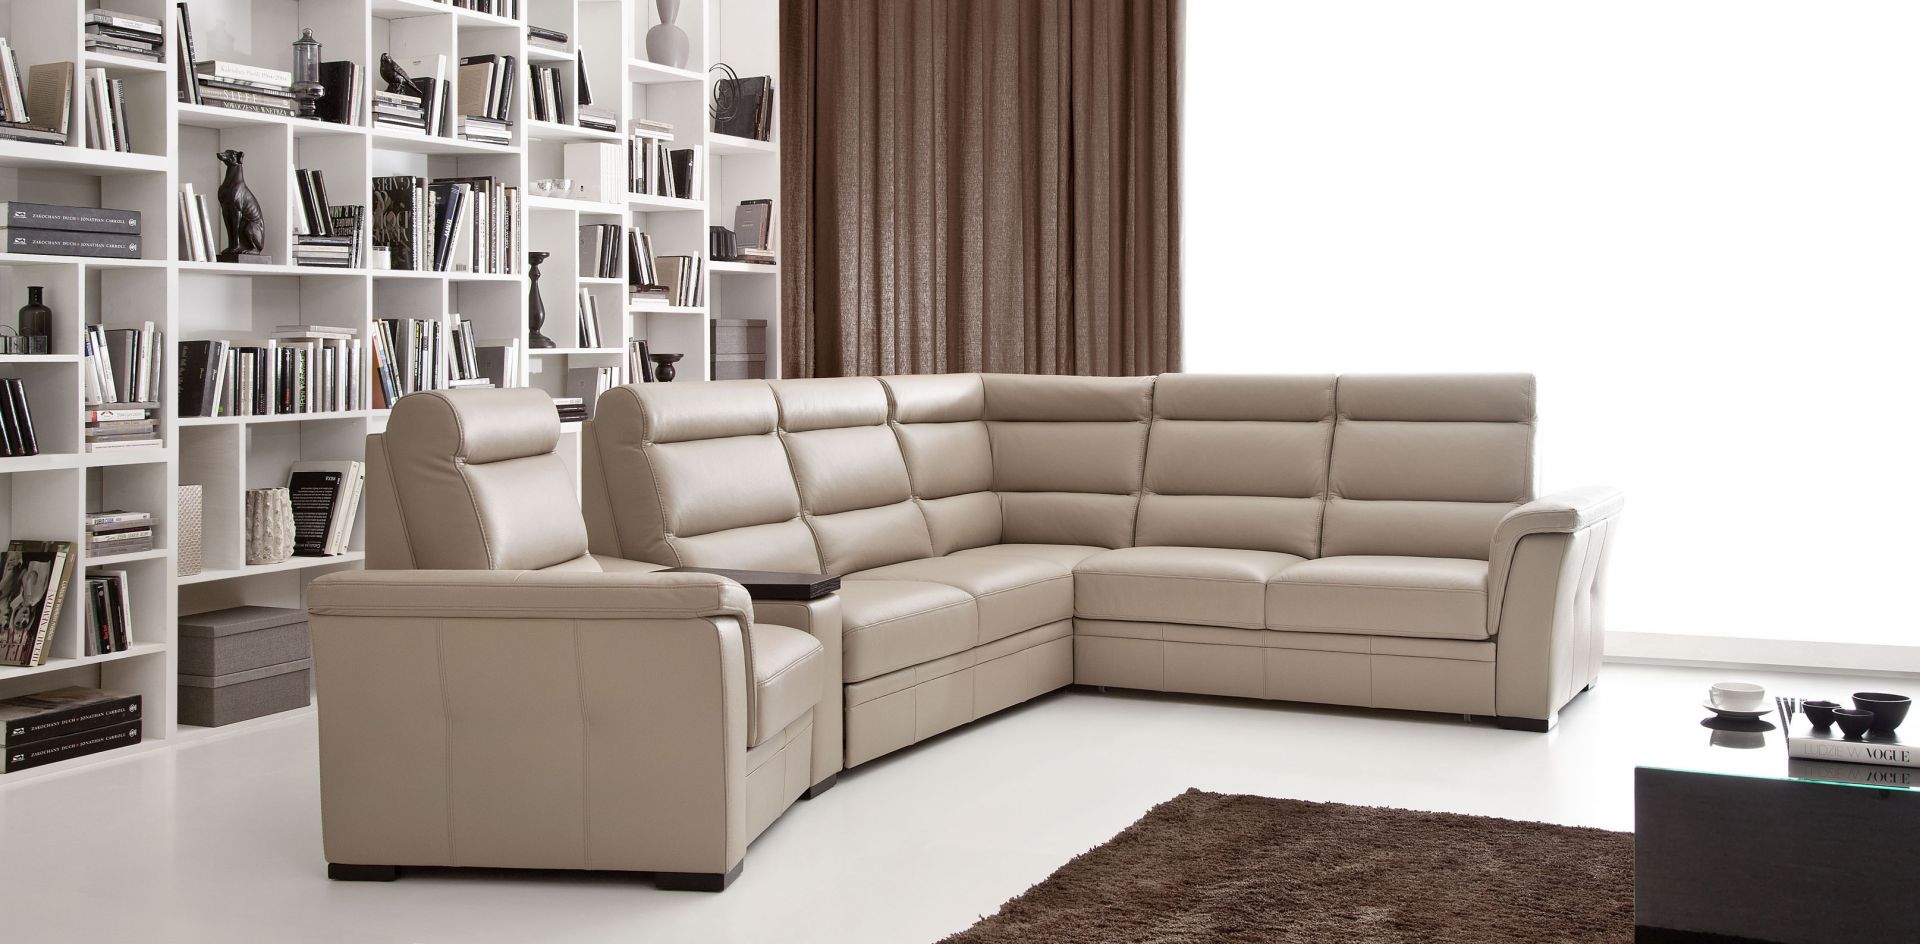 Duża ilość modułów narożnika Lounge daje możliwość dopasowania wyglądu oraz rozmiaru sofy do potrzeb wnętrza. Fot. Etap Sofa